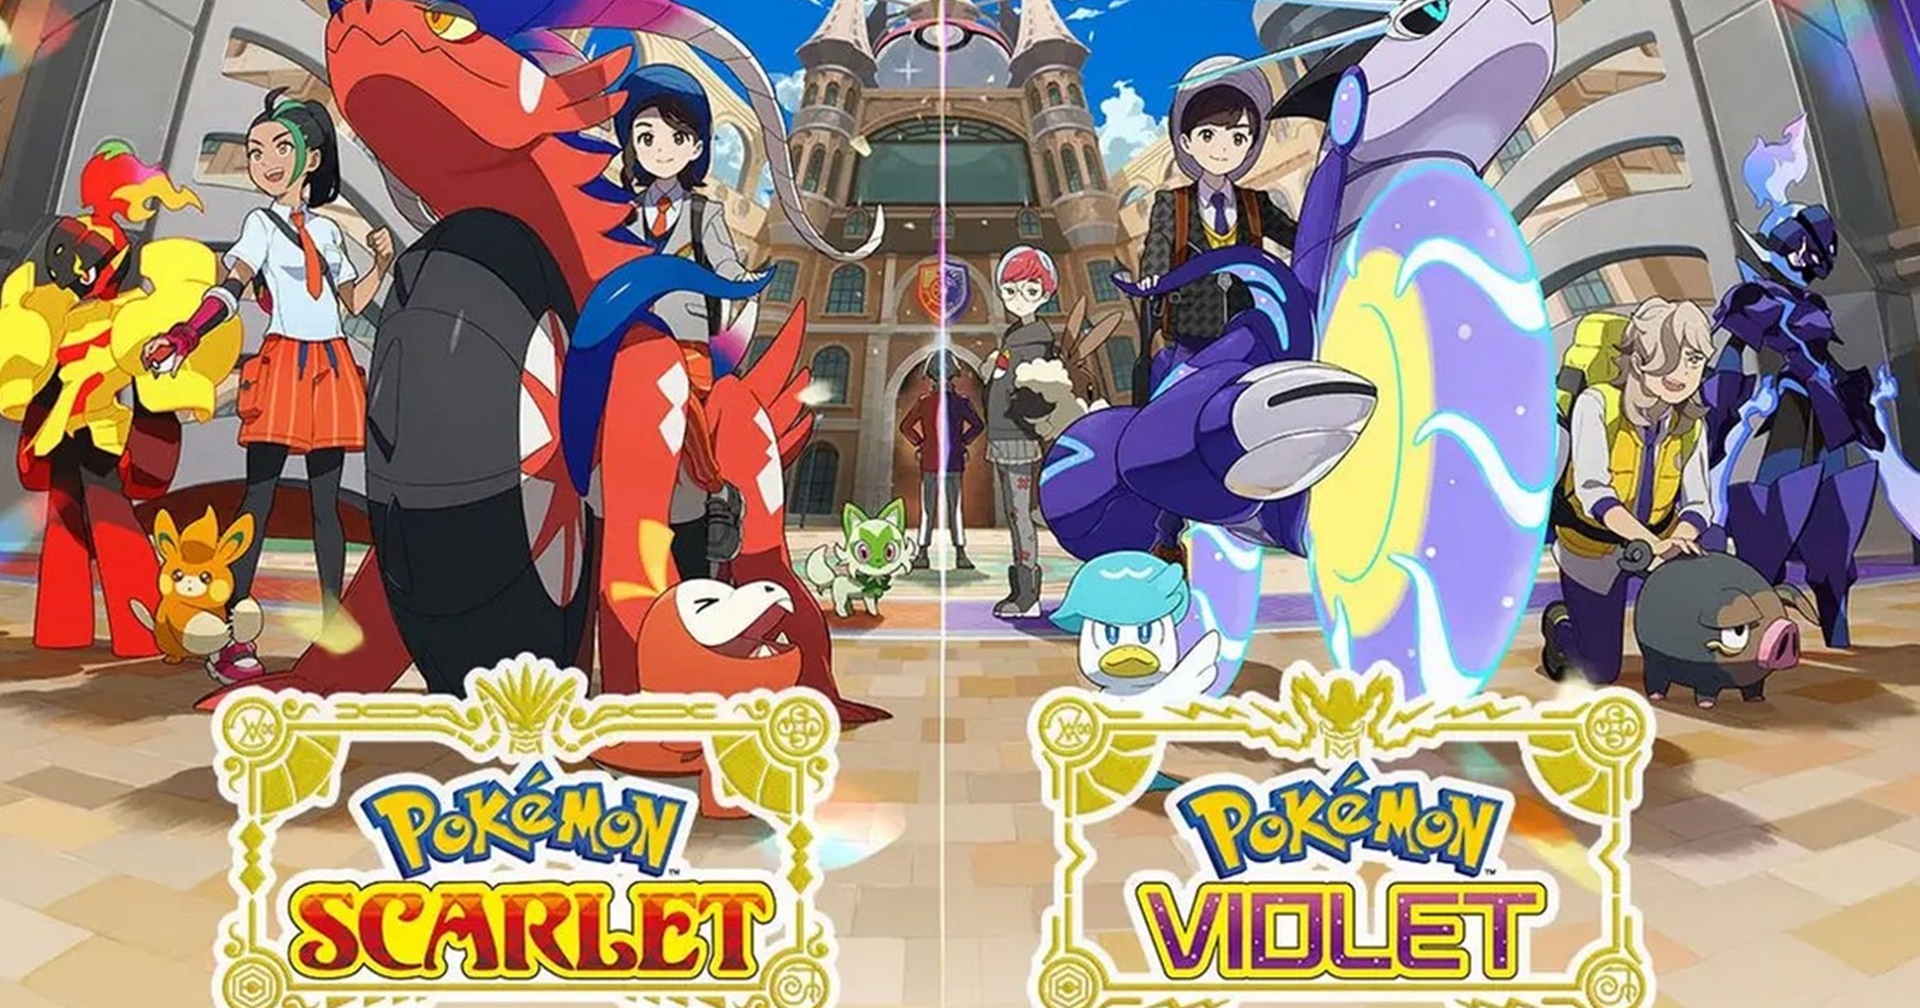 ชมตัวอย่างใหม่ Pokemon Scarlet & Violet ที่มาพร้อมข้อมูลใหม่ และเพลงของ Ed Sheeran